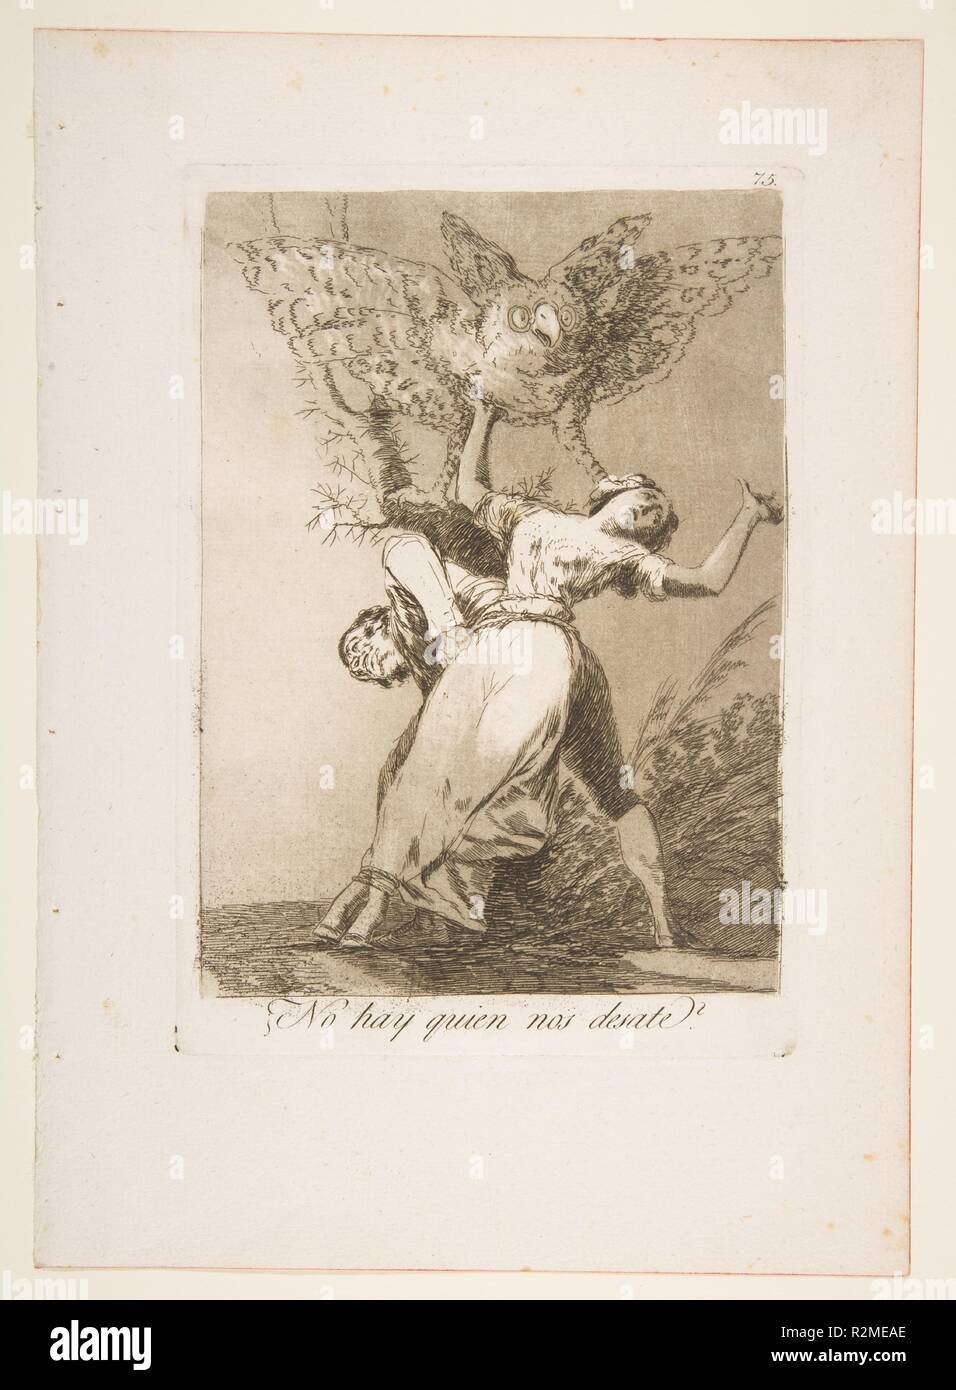 75 Plaque de "Los Caprichos" : y a personne pour nous délier ? (¿No hay quien no desate ?). Artiste : Goya (Francisco de Goya y Lucientes (Fuendetodos) espagnol, 1746-1828 Bordeaux). Dimensions : Plateau : 8 3/8 x 5 7/8 in. (21,3 x 14,9 cm) feuille : 11 5/8 x 8 1/4 in. (29,5 x 21 cm). Series/portefeuille : Los Caprichos. Date : 1799. Musée : Metropolitan Museum of Art, New York, USA. Banque D'Images